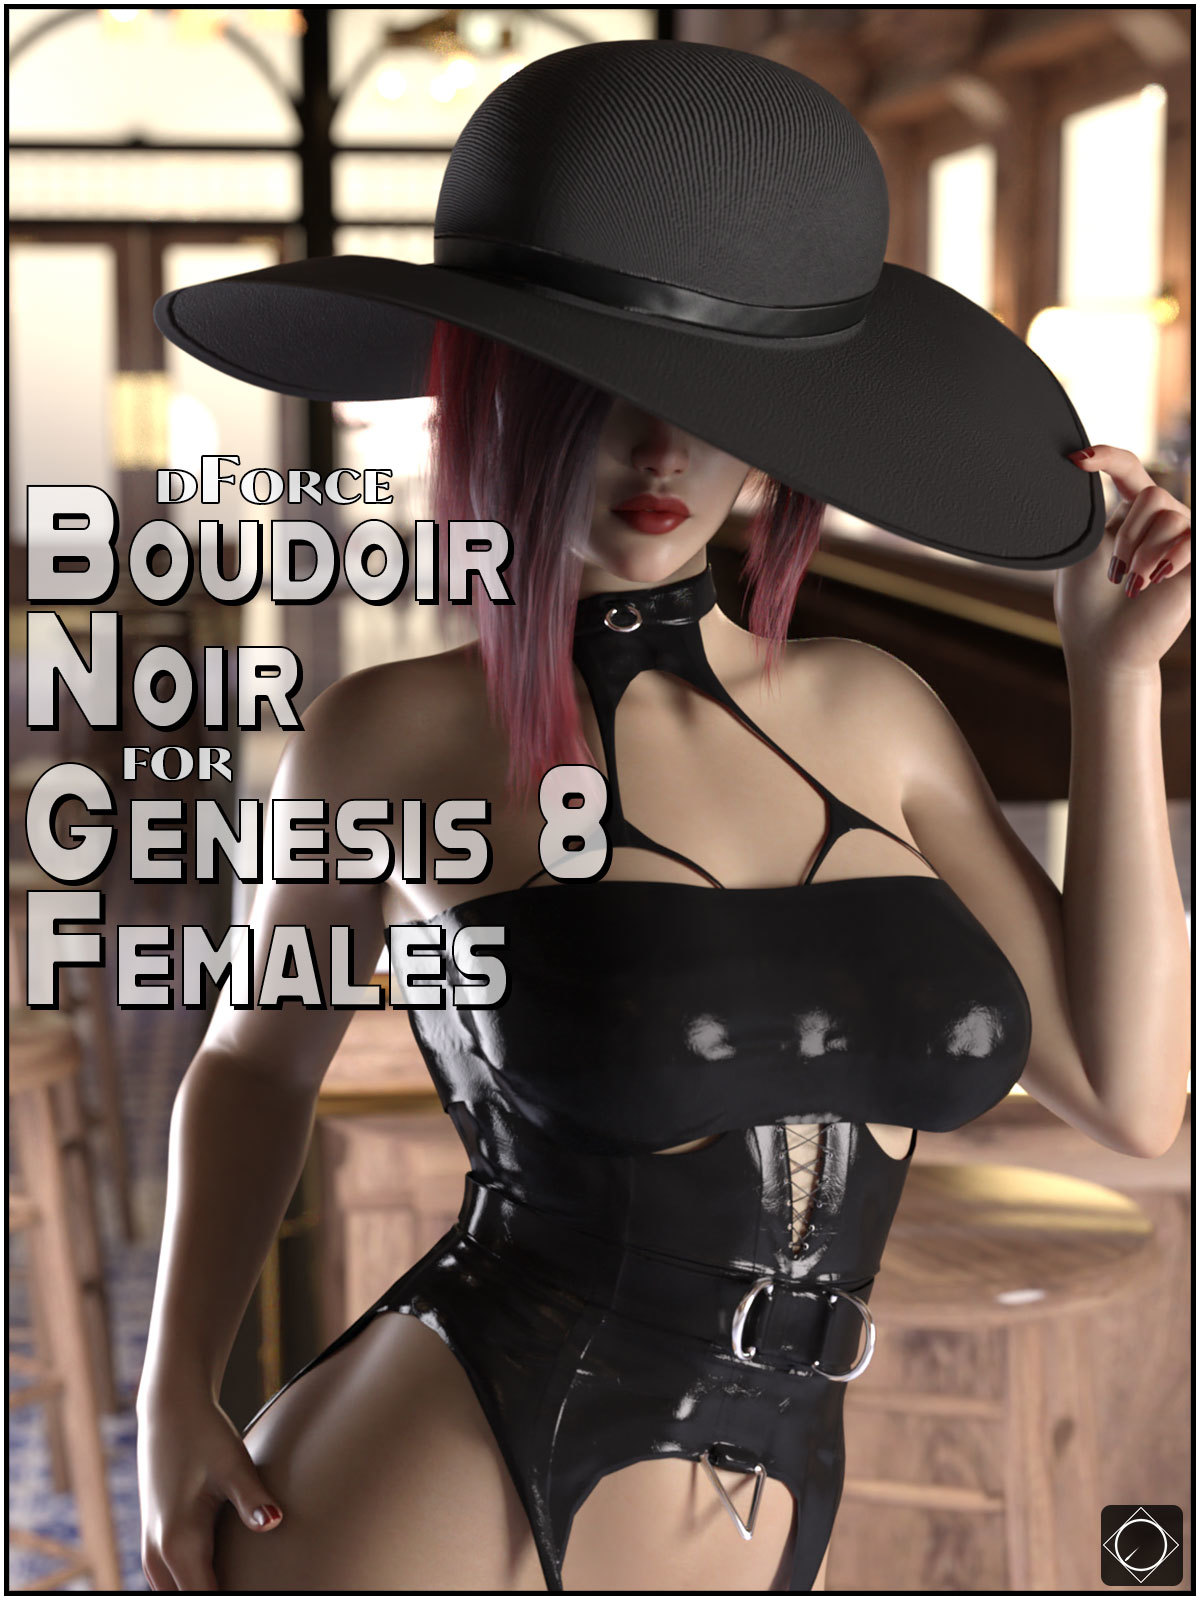 dForce Boudoir Noir for Genesis 8 Females_DAZ3D下载站